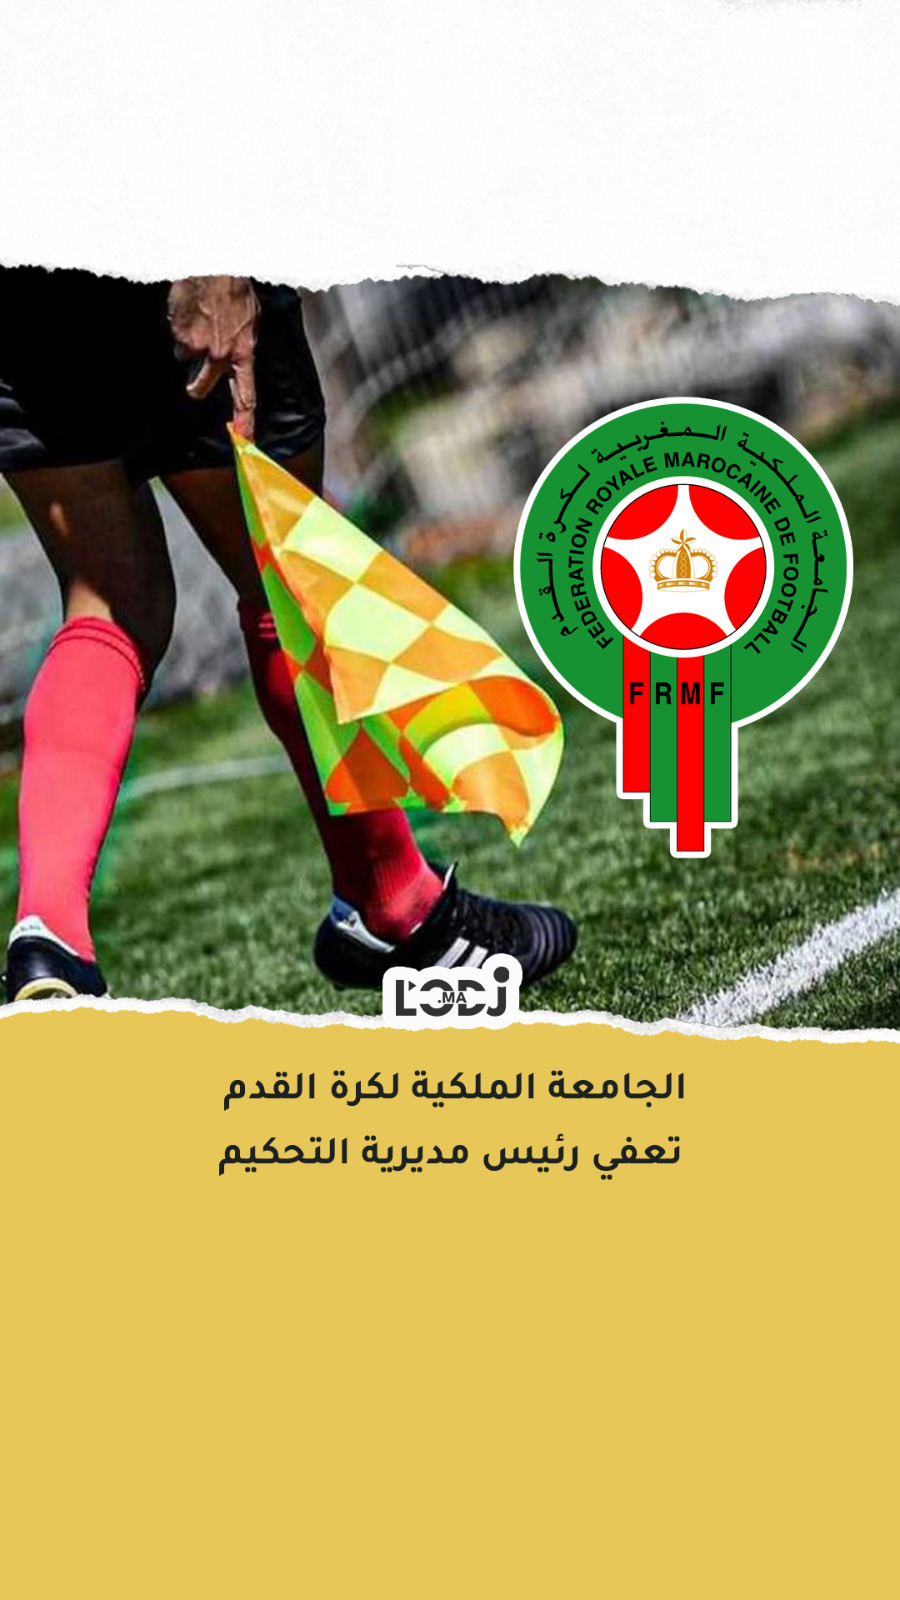 الجامعة الملكية المغربية لكرة القدم تعفي رئيس مديرية التحكيم